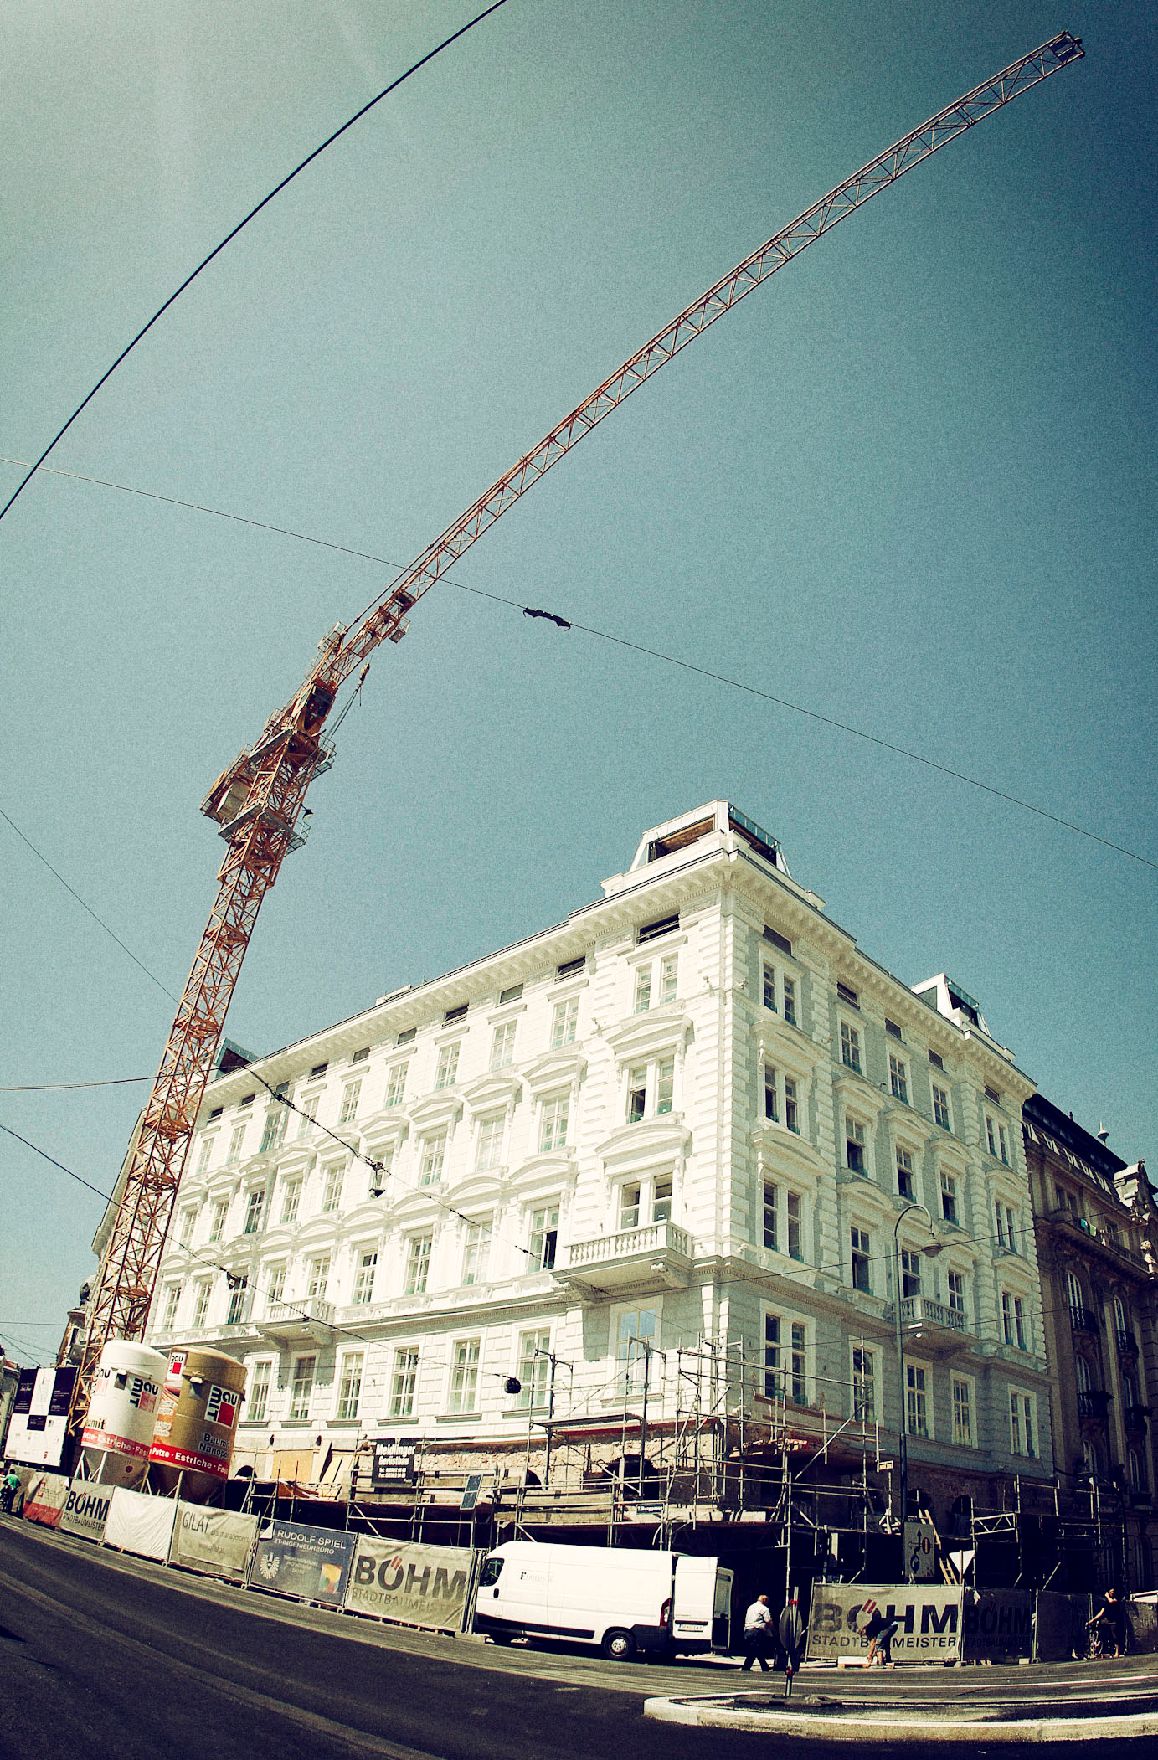 Eine Baustelle in Wien. Schlagworte: Baustelle, Gebäude, Kran, Wirtschaft